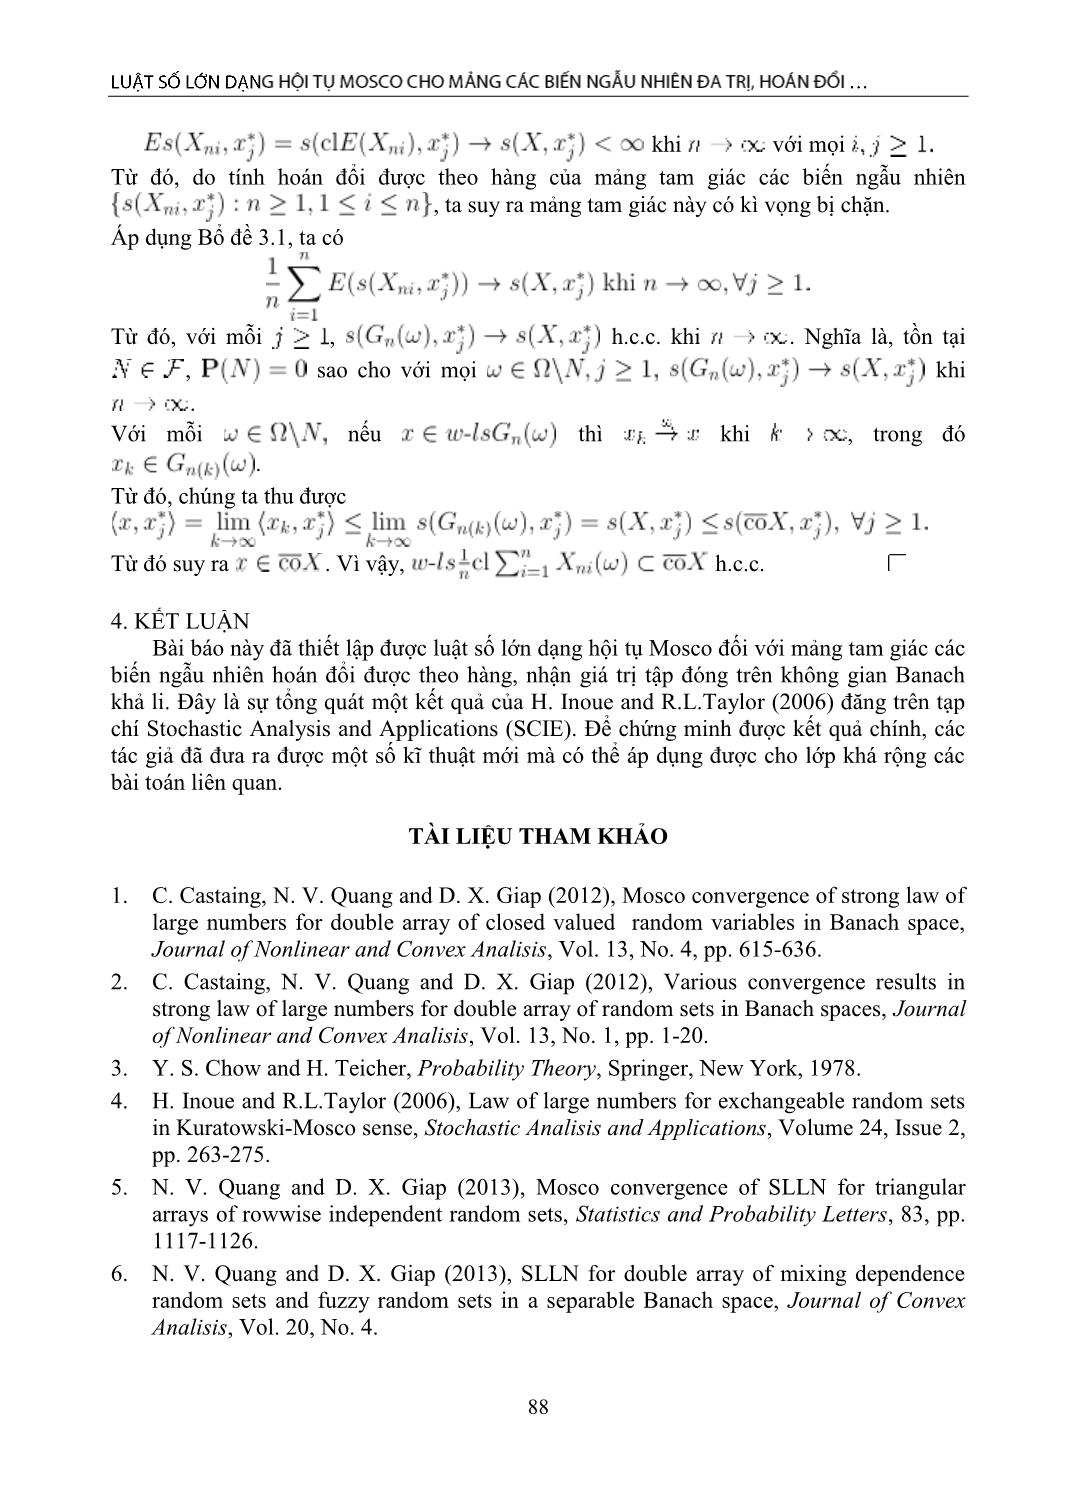 Luật số lớn dạng hội tụ Mosco cho mảng các biến ngẫu nhiên đa trị, hoán đổi được theo hàng trang 7